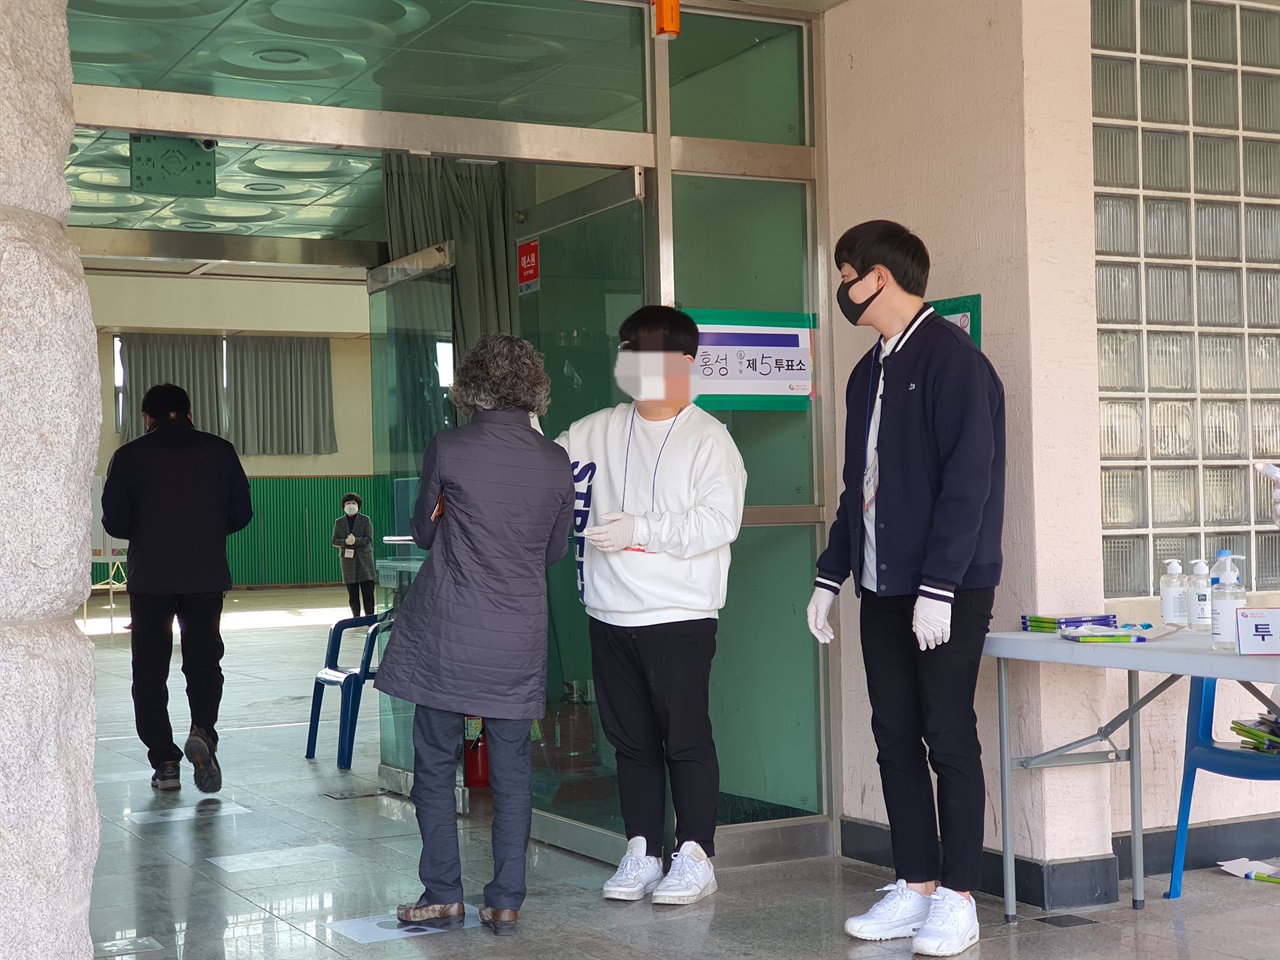 이날 투표소에는 지난 사전투표와 마찬가지로 신종코로나바이러스 감염증 (코로나 19) 우려로 유권자들은 마스크를 착용했다. 투표소에 들어가기전 발열체크는 필수다.